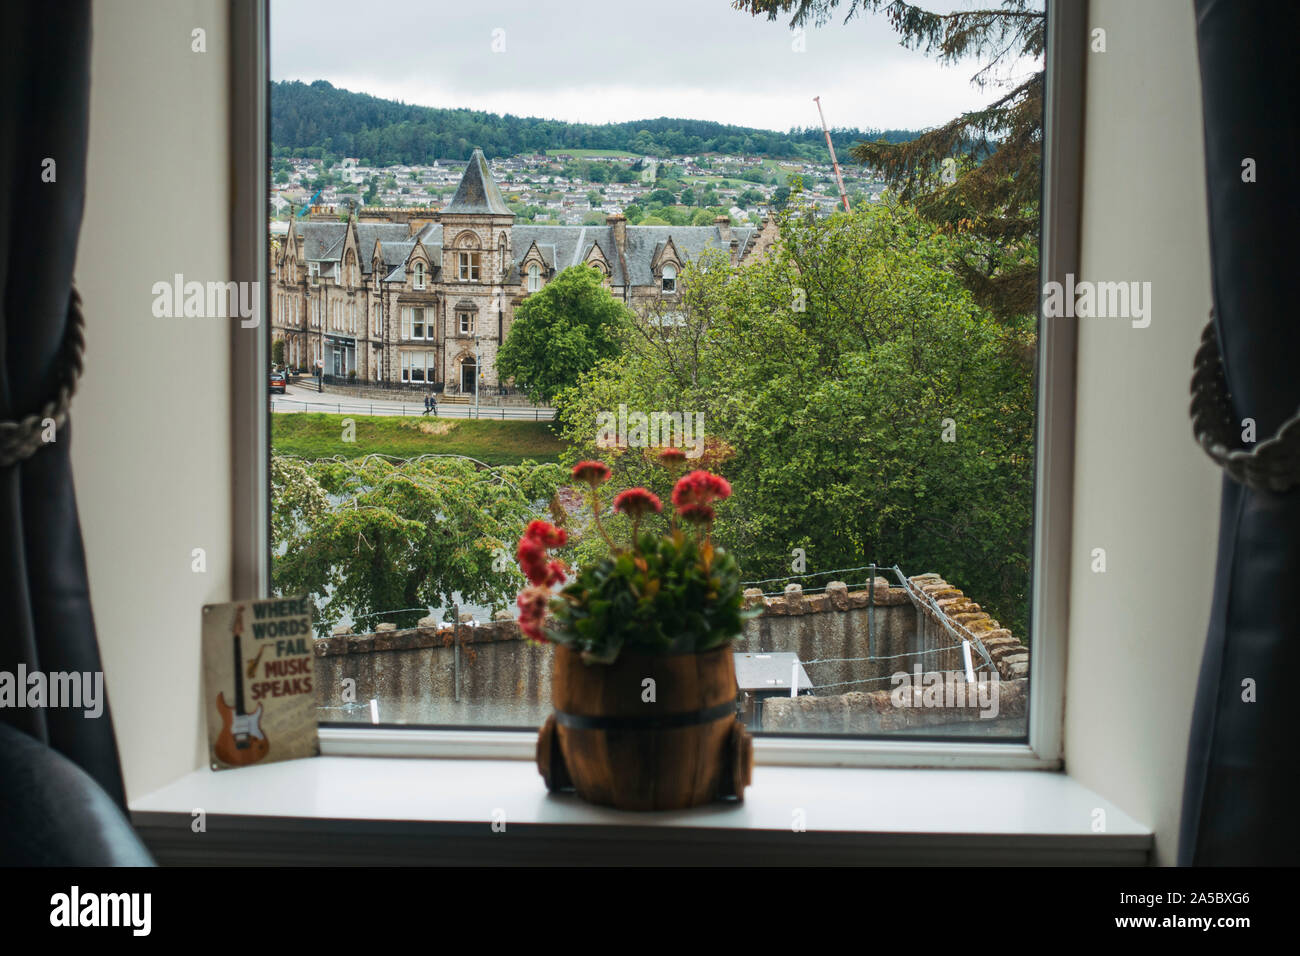 Guardando fuori una finestra di hotel a Inverness, Scotland. Un impianto di POT si siede sul davanzale, mentre altri edifici dal 1870 sono visibili in background Foto Stock